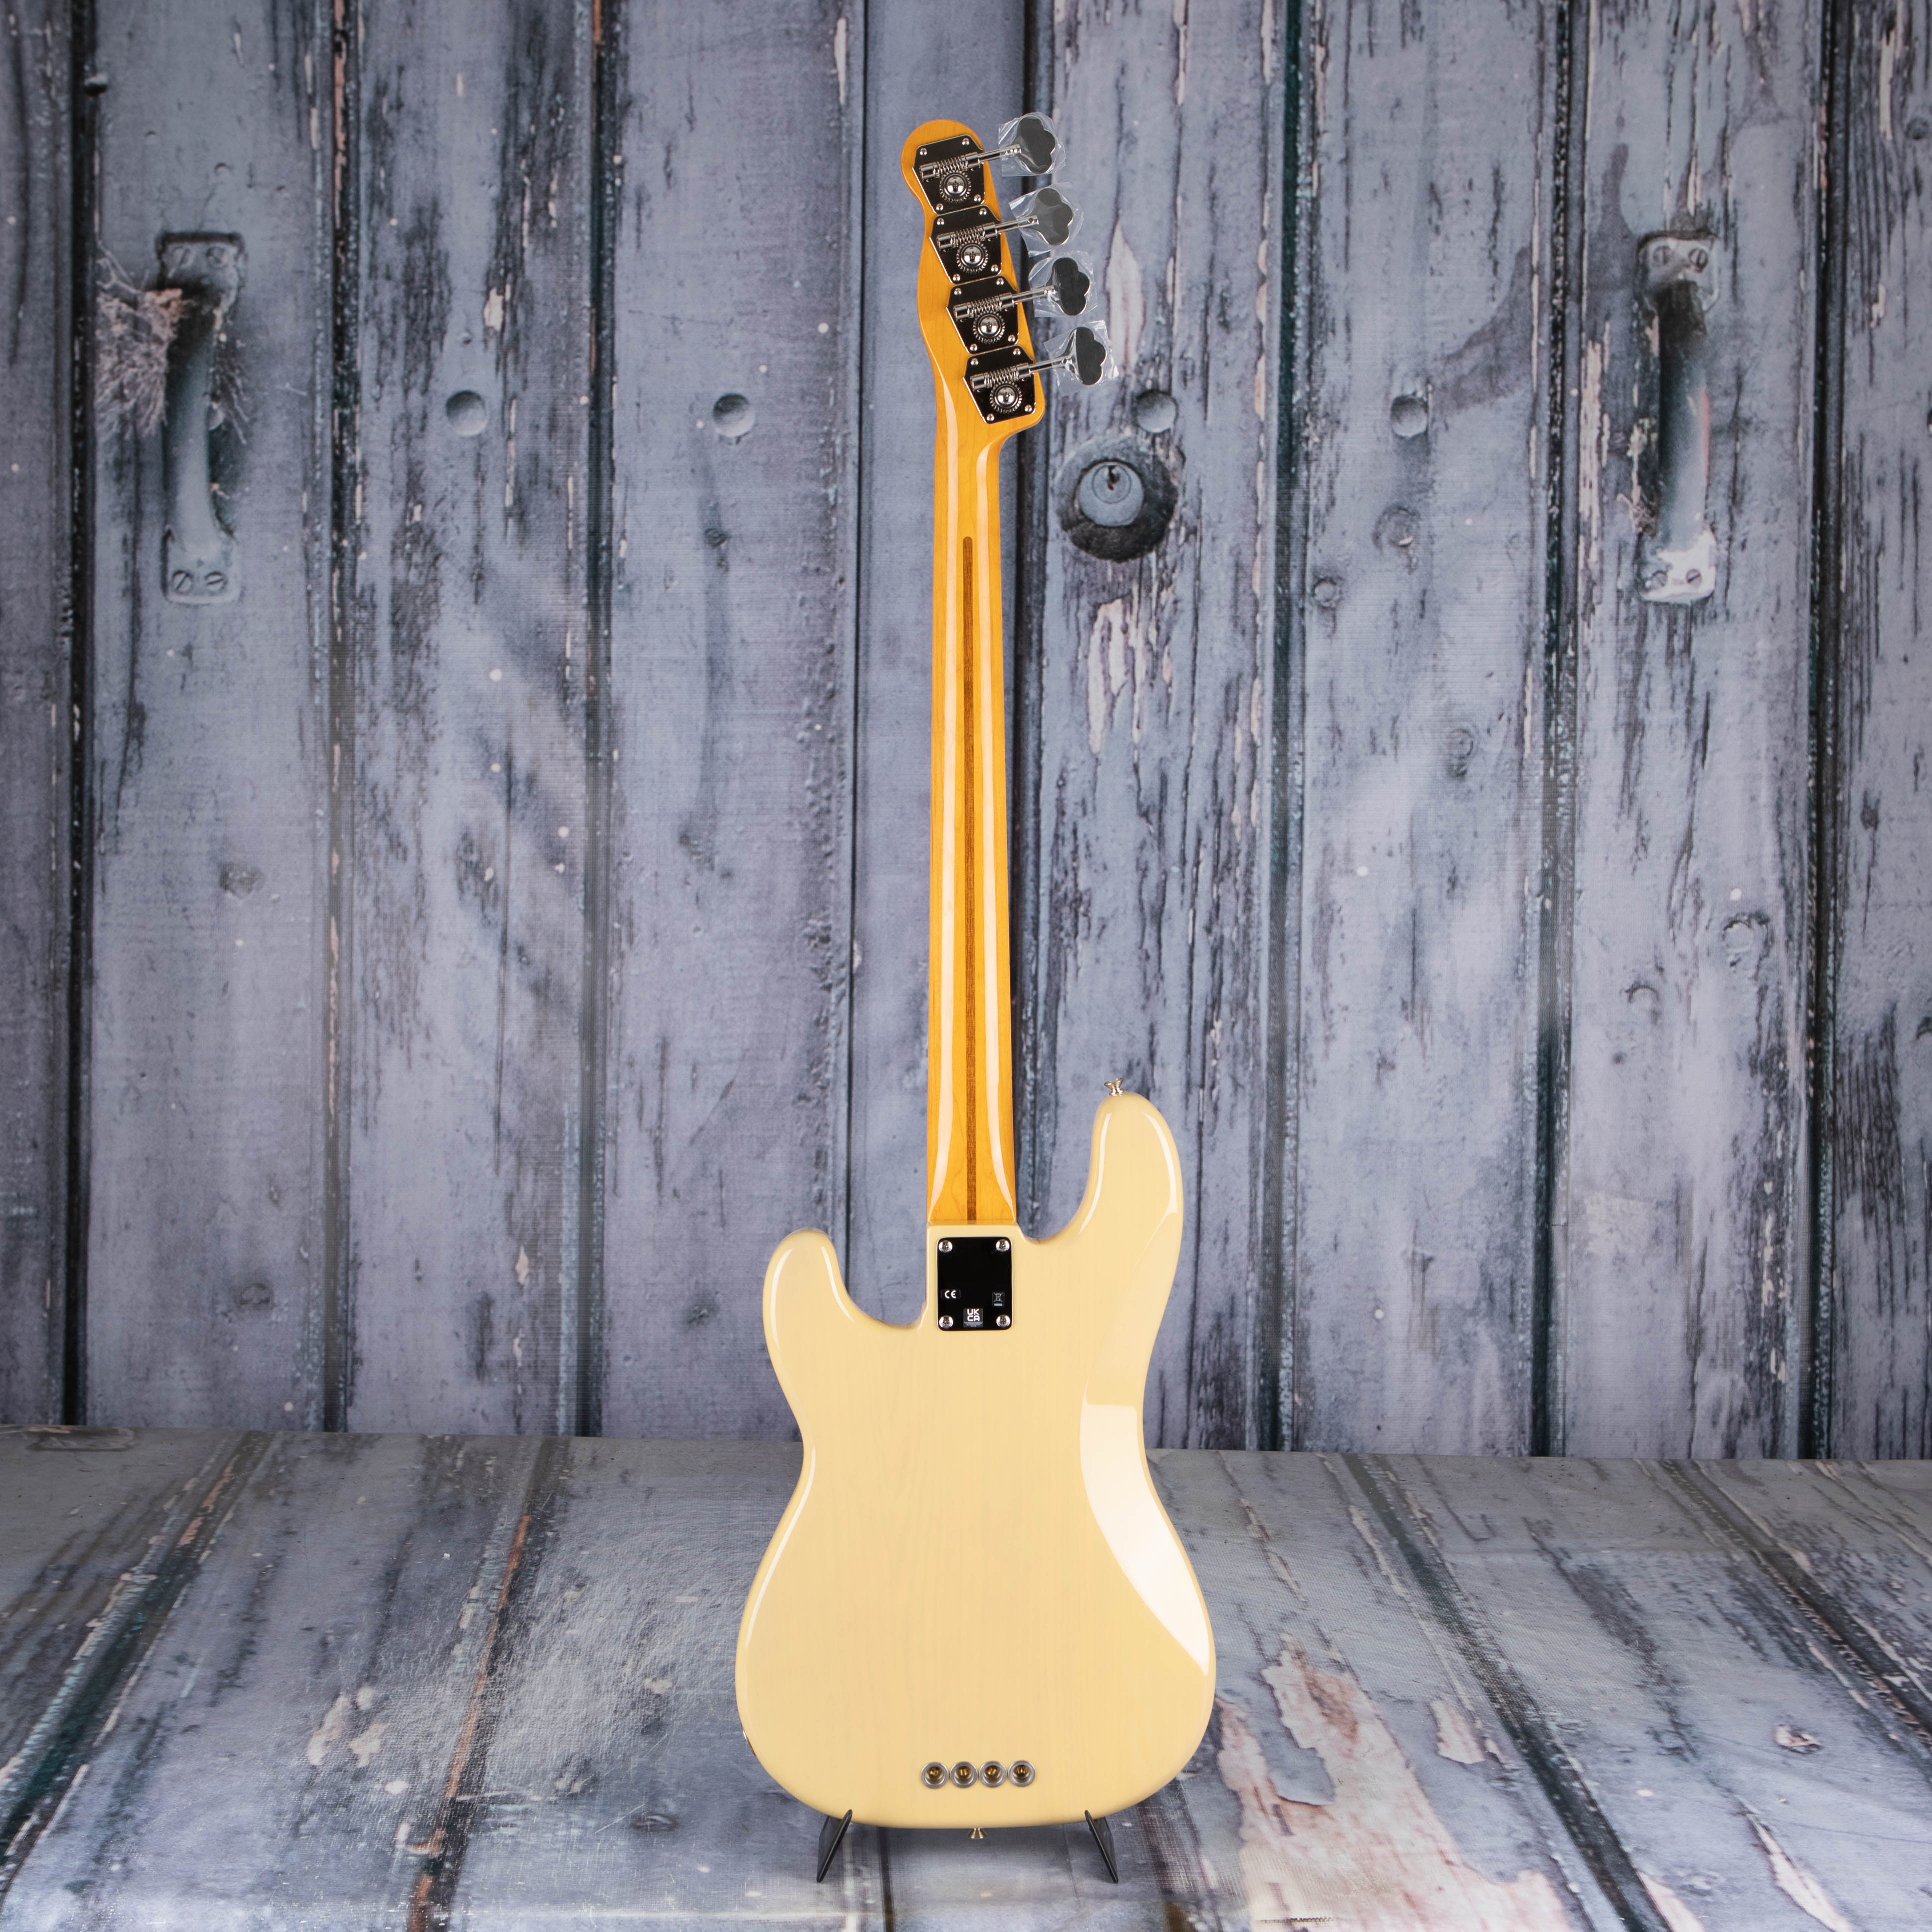 Fender American Vintage II 1954 Precision Bass Guitar, Vintage Blonde, back